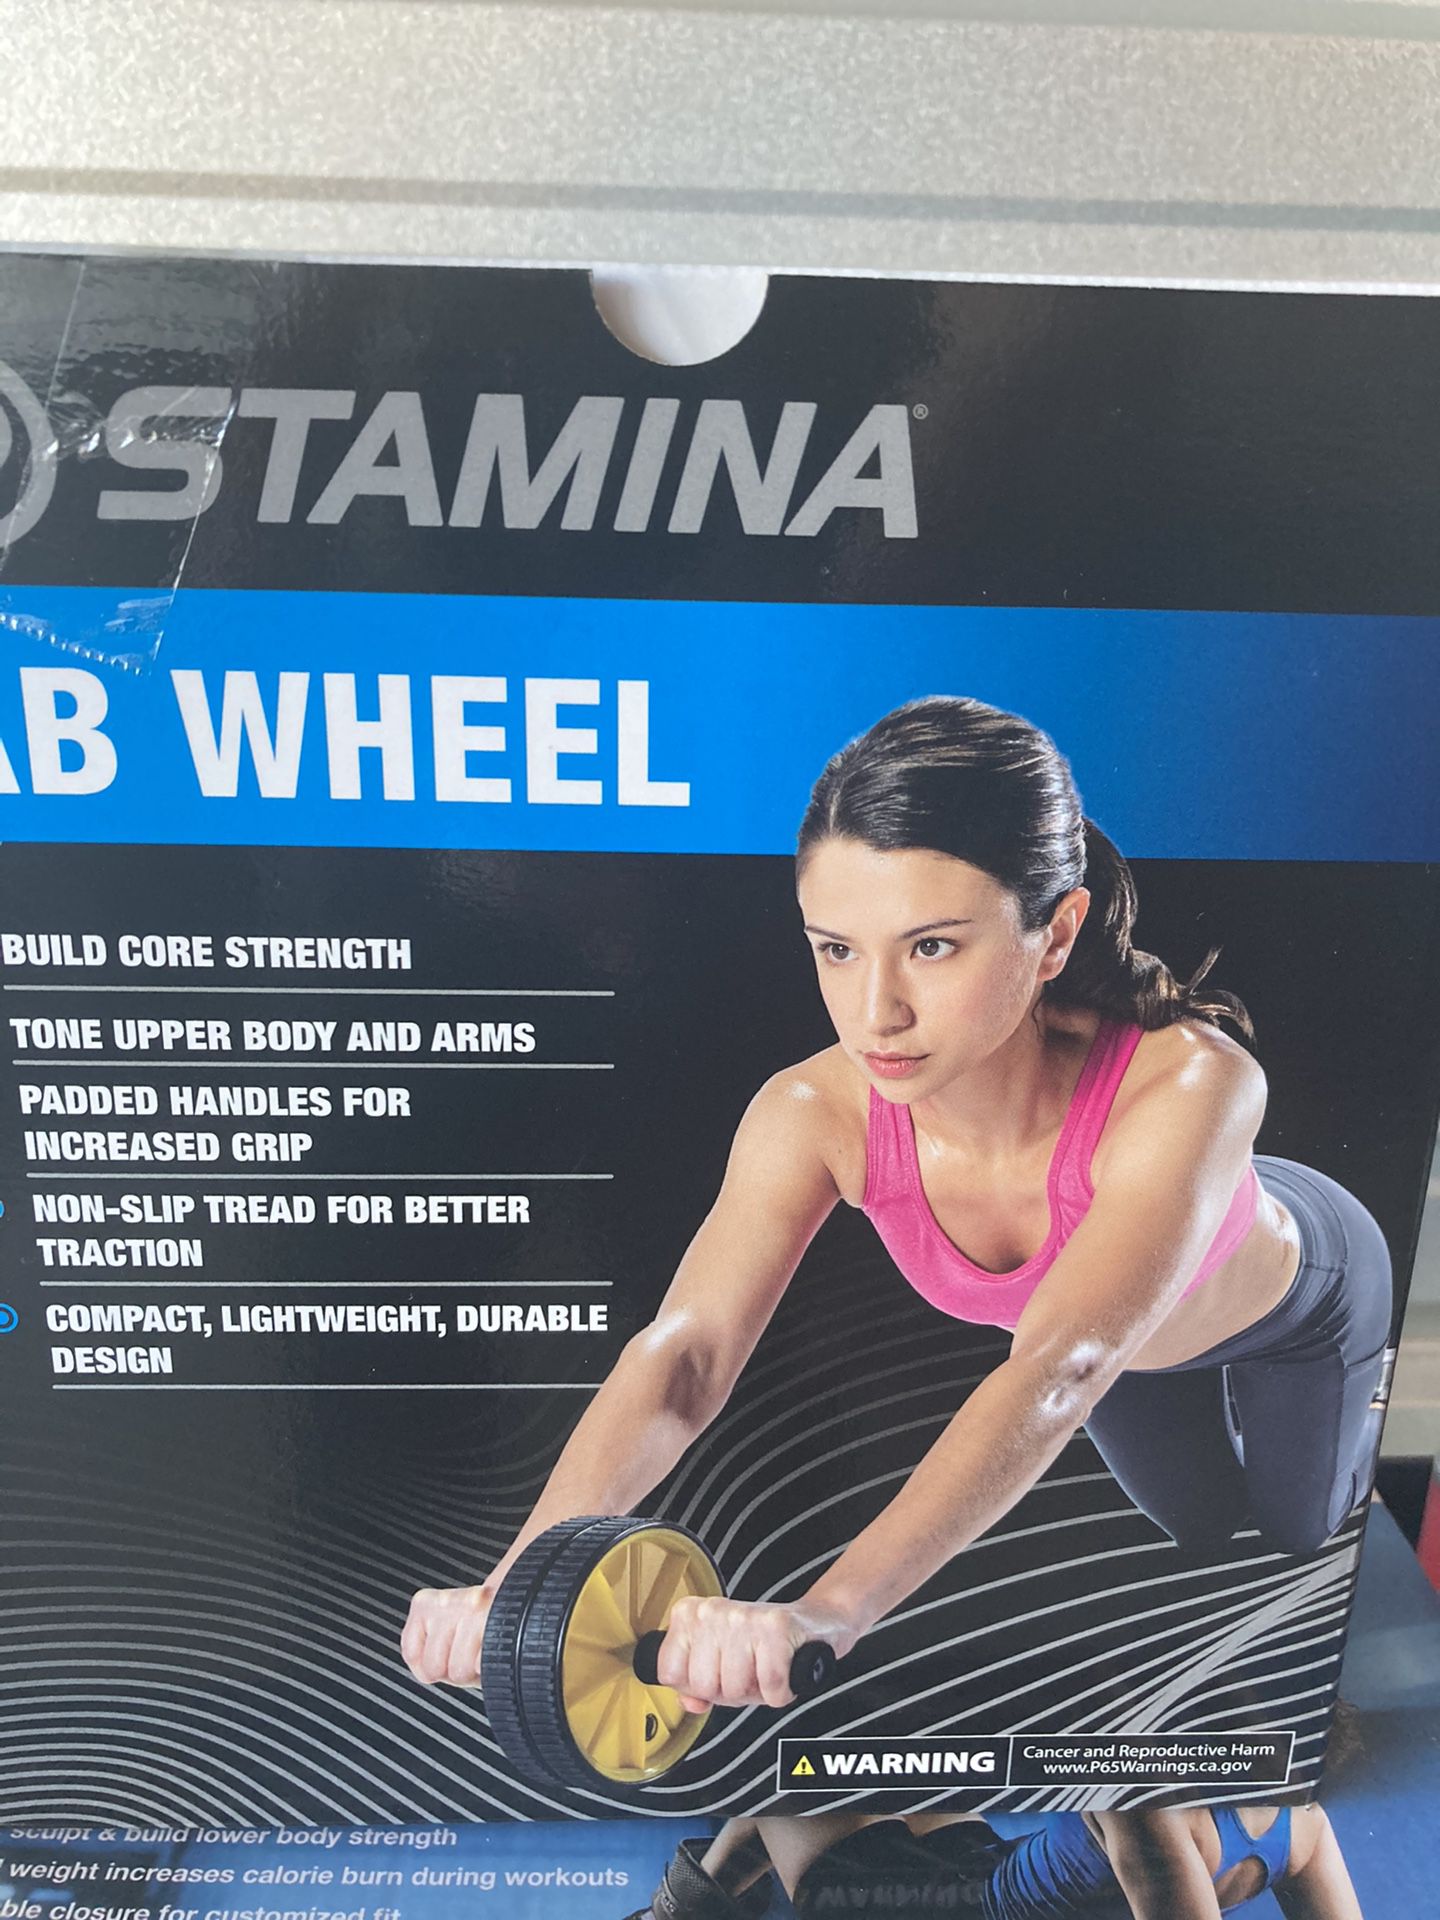 Home Gym Equipment - Ab Wheel